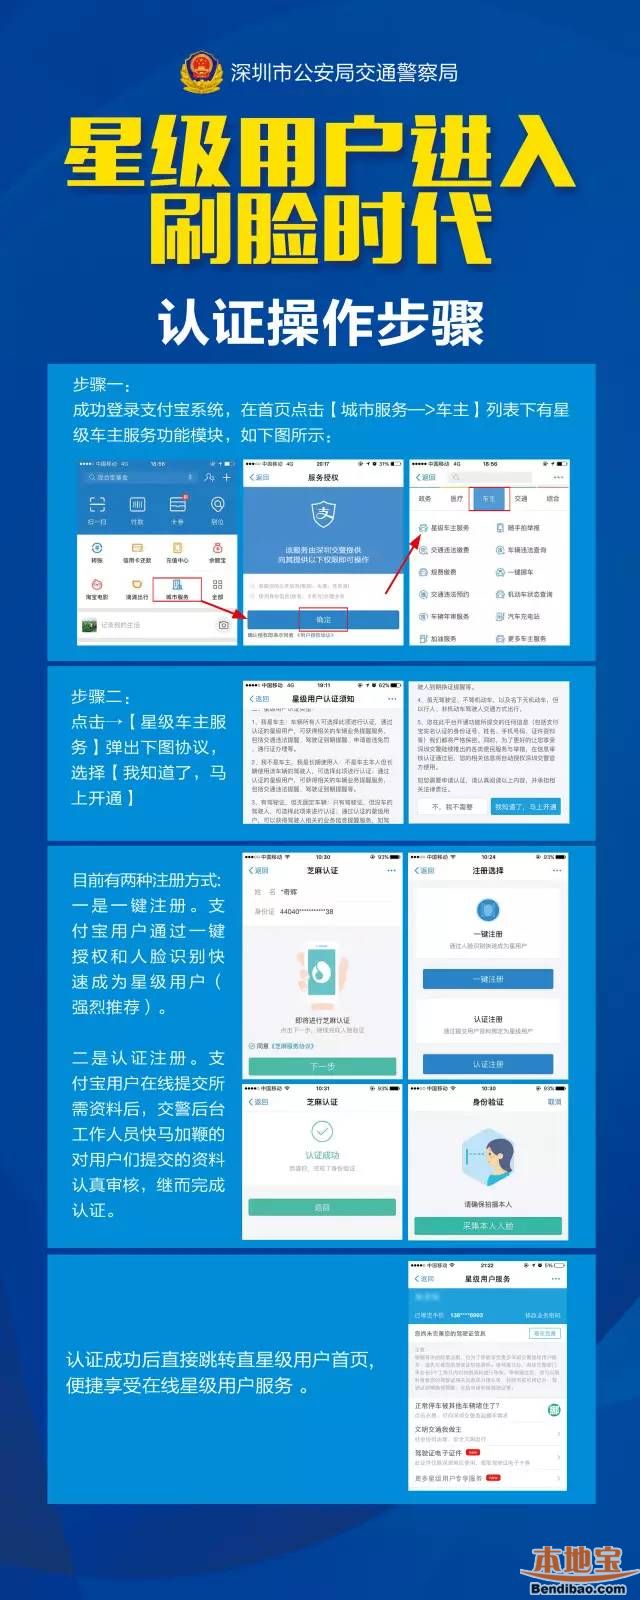 深圳交警星级用户刷脸即可注册认证 附操作步骤